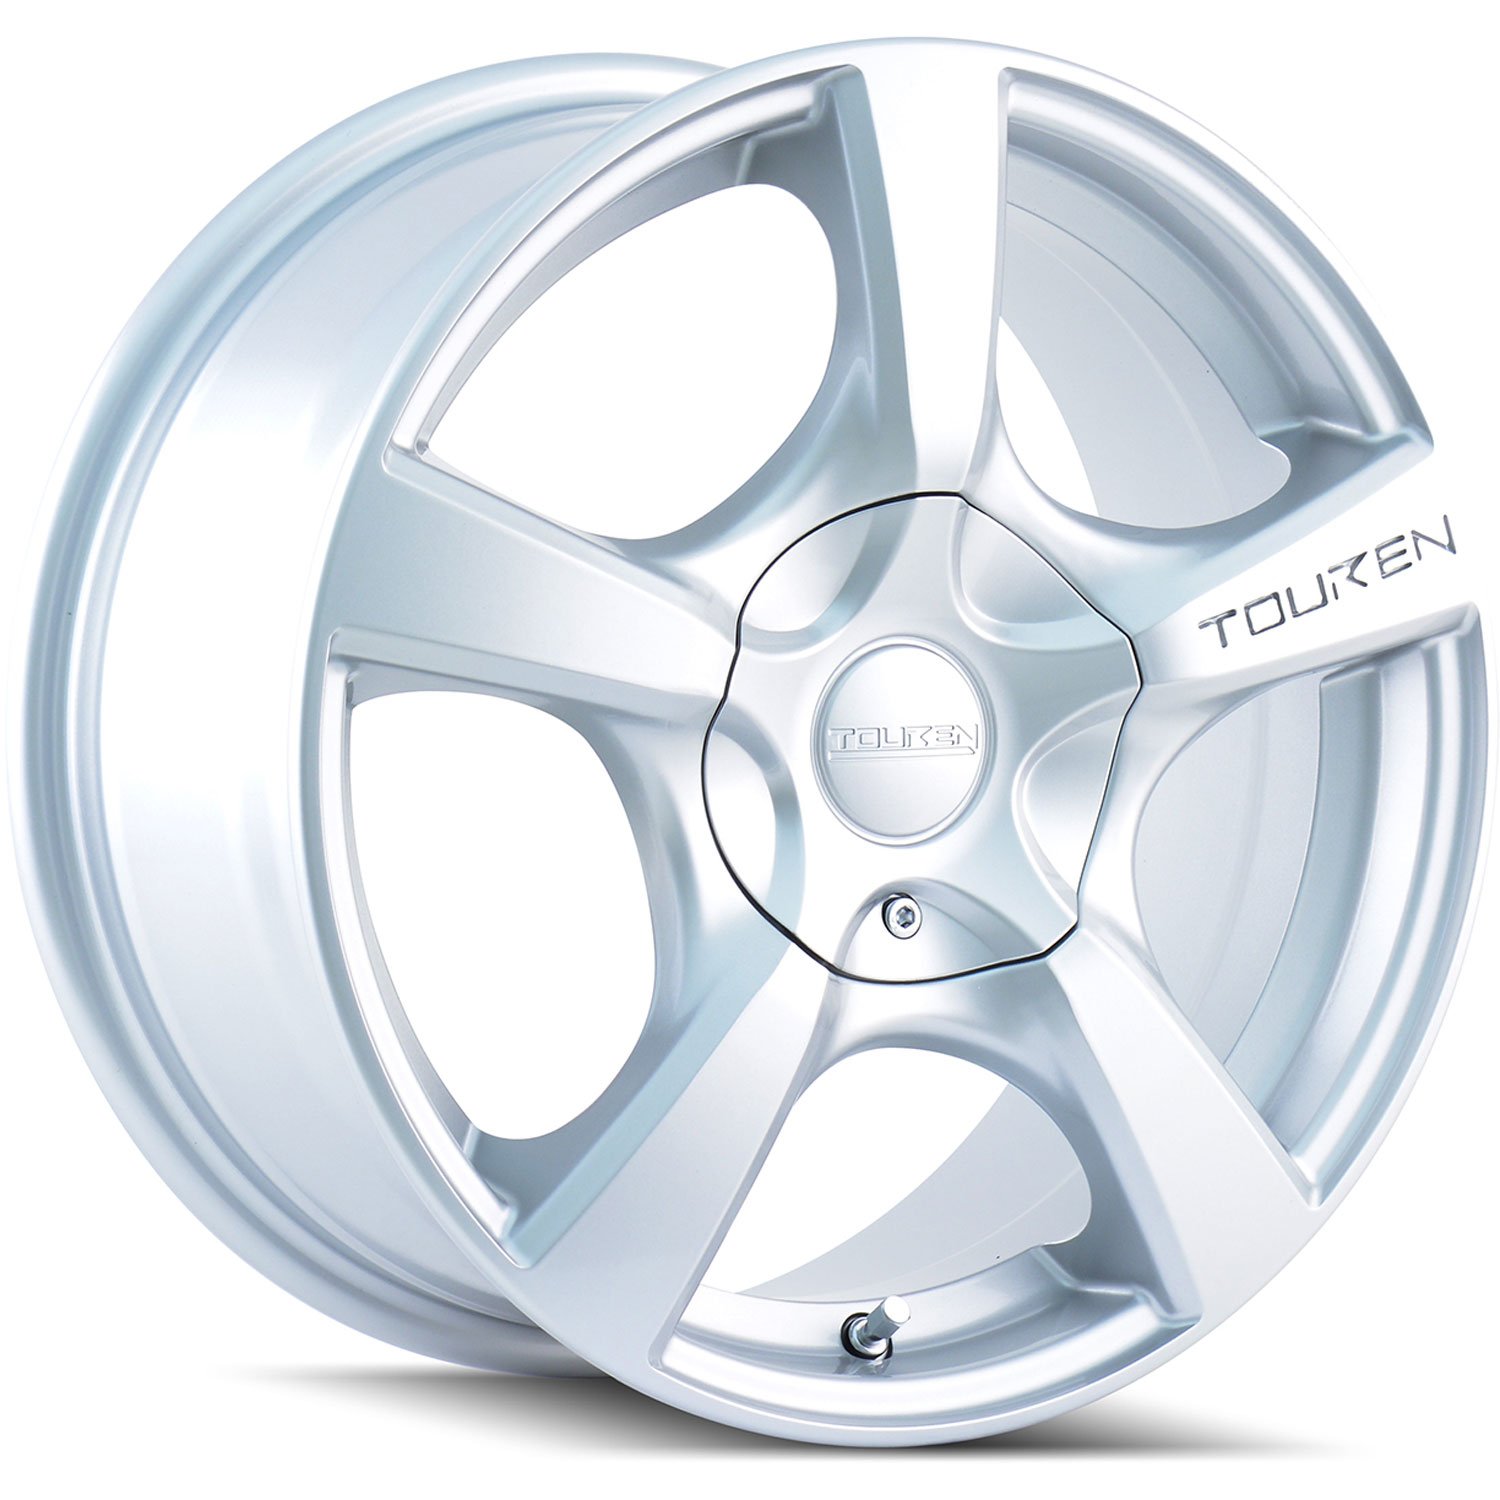 Touren TR9 Series Wheel Size: 19" x 8.5" Bolt Circle: 6 x 132mm